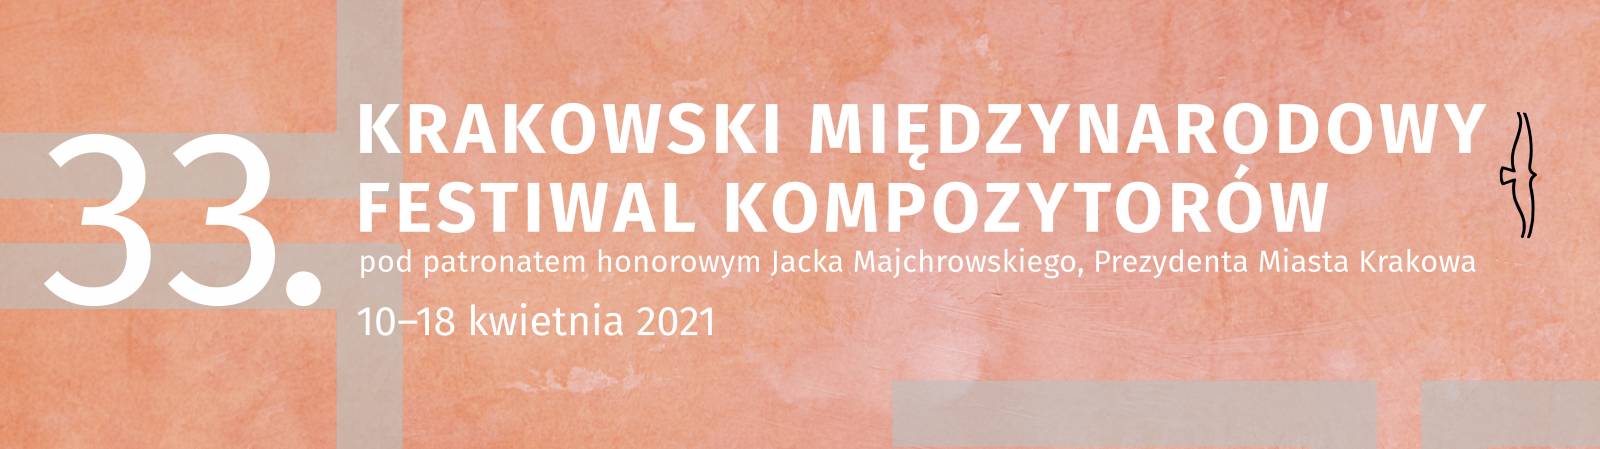 33. Krakowski Międzynarodowy Festiwal Kompozytorów (online)